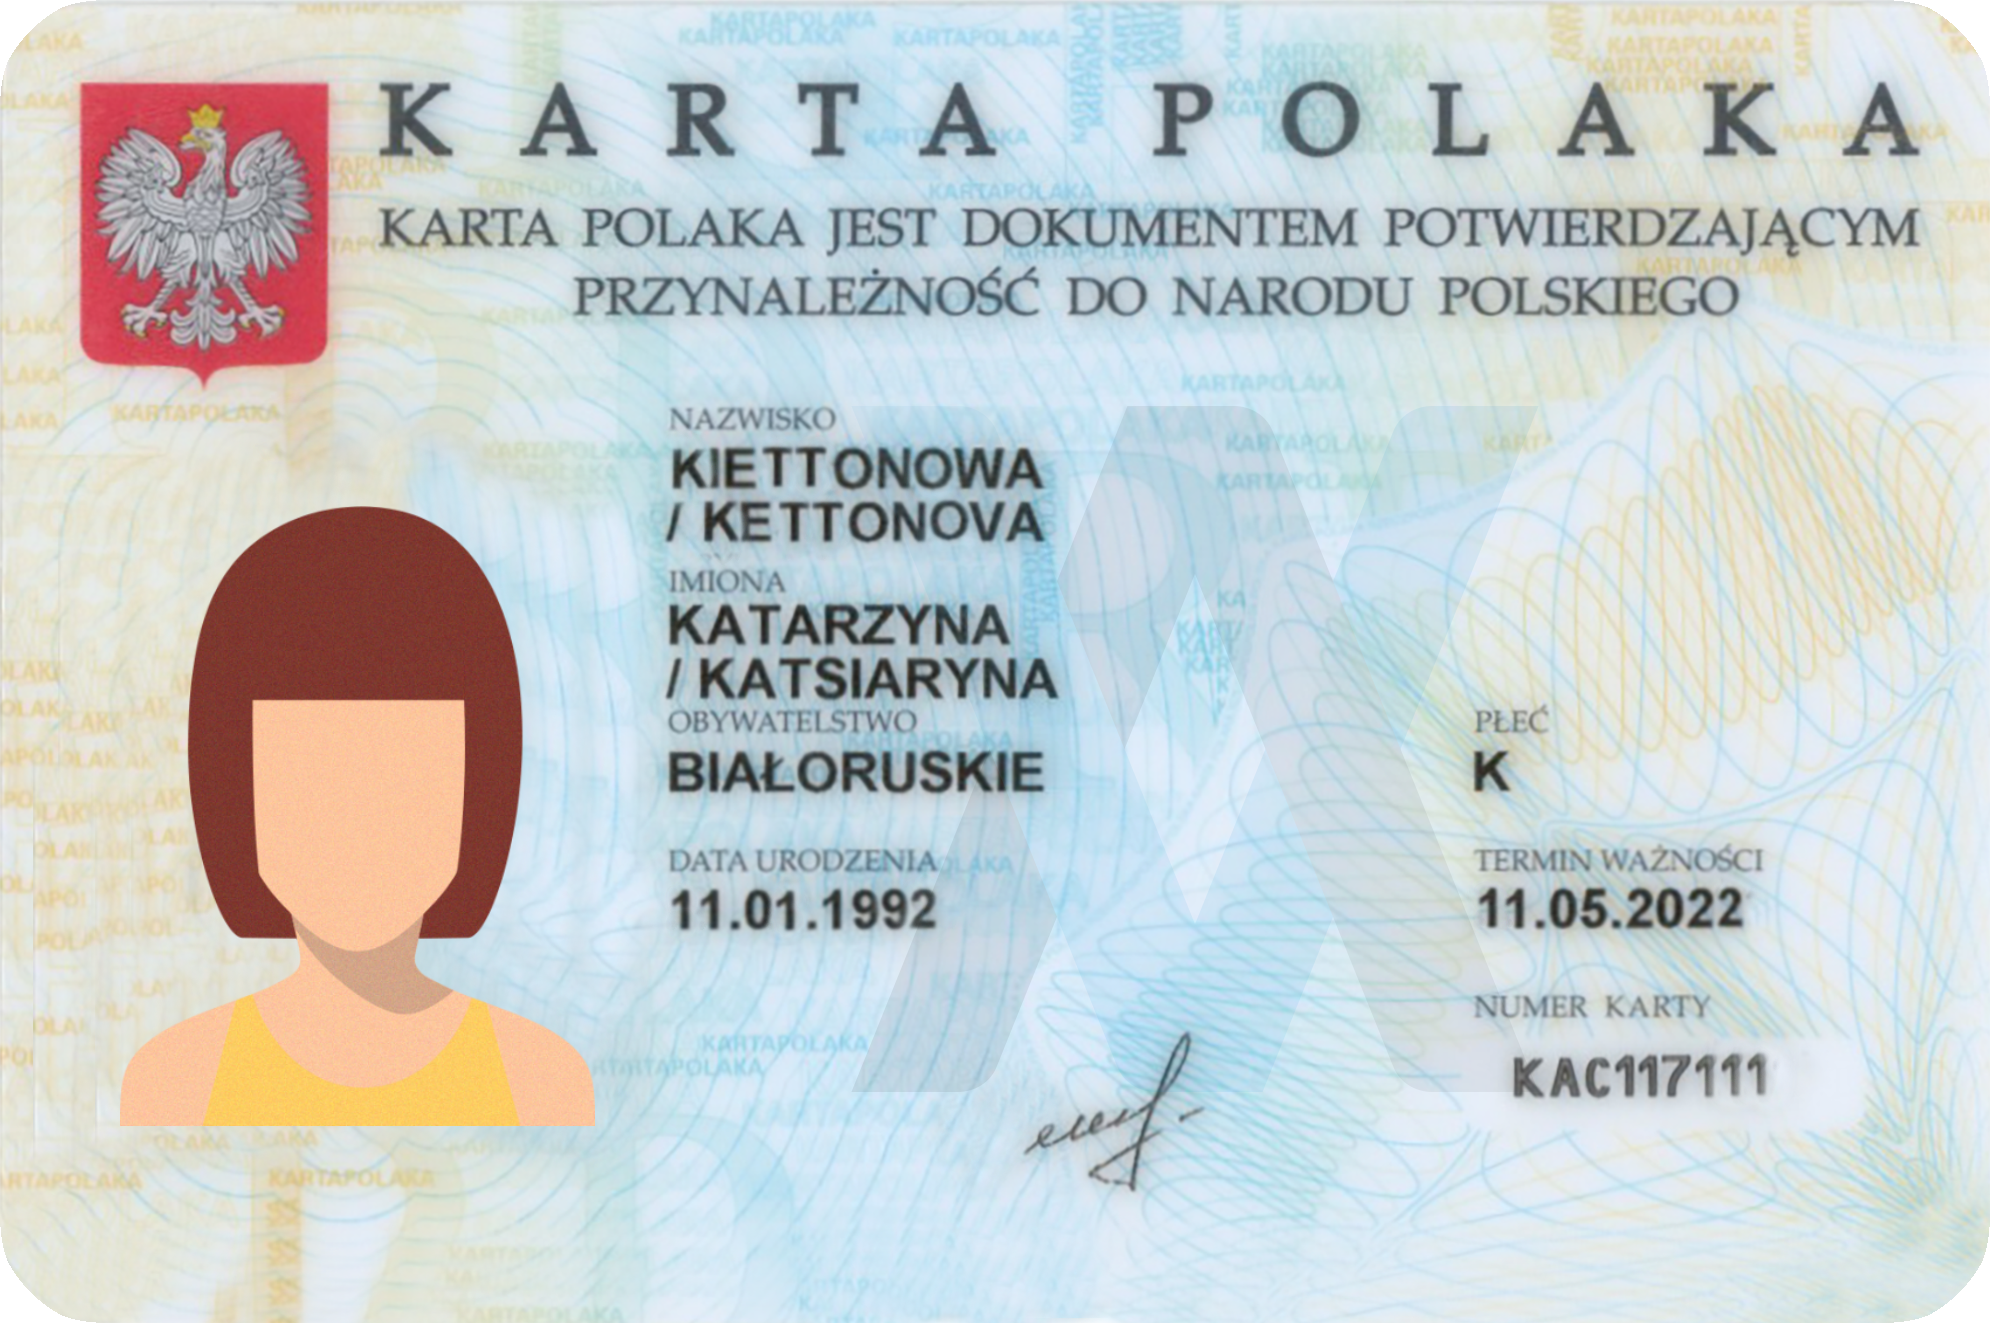 Карта поляка — как получить в 2021 году, что она дает, документы, продление